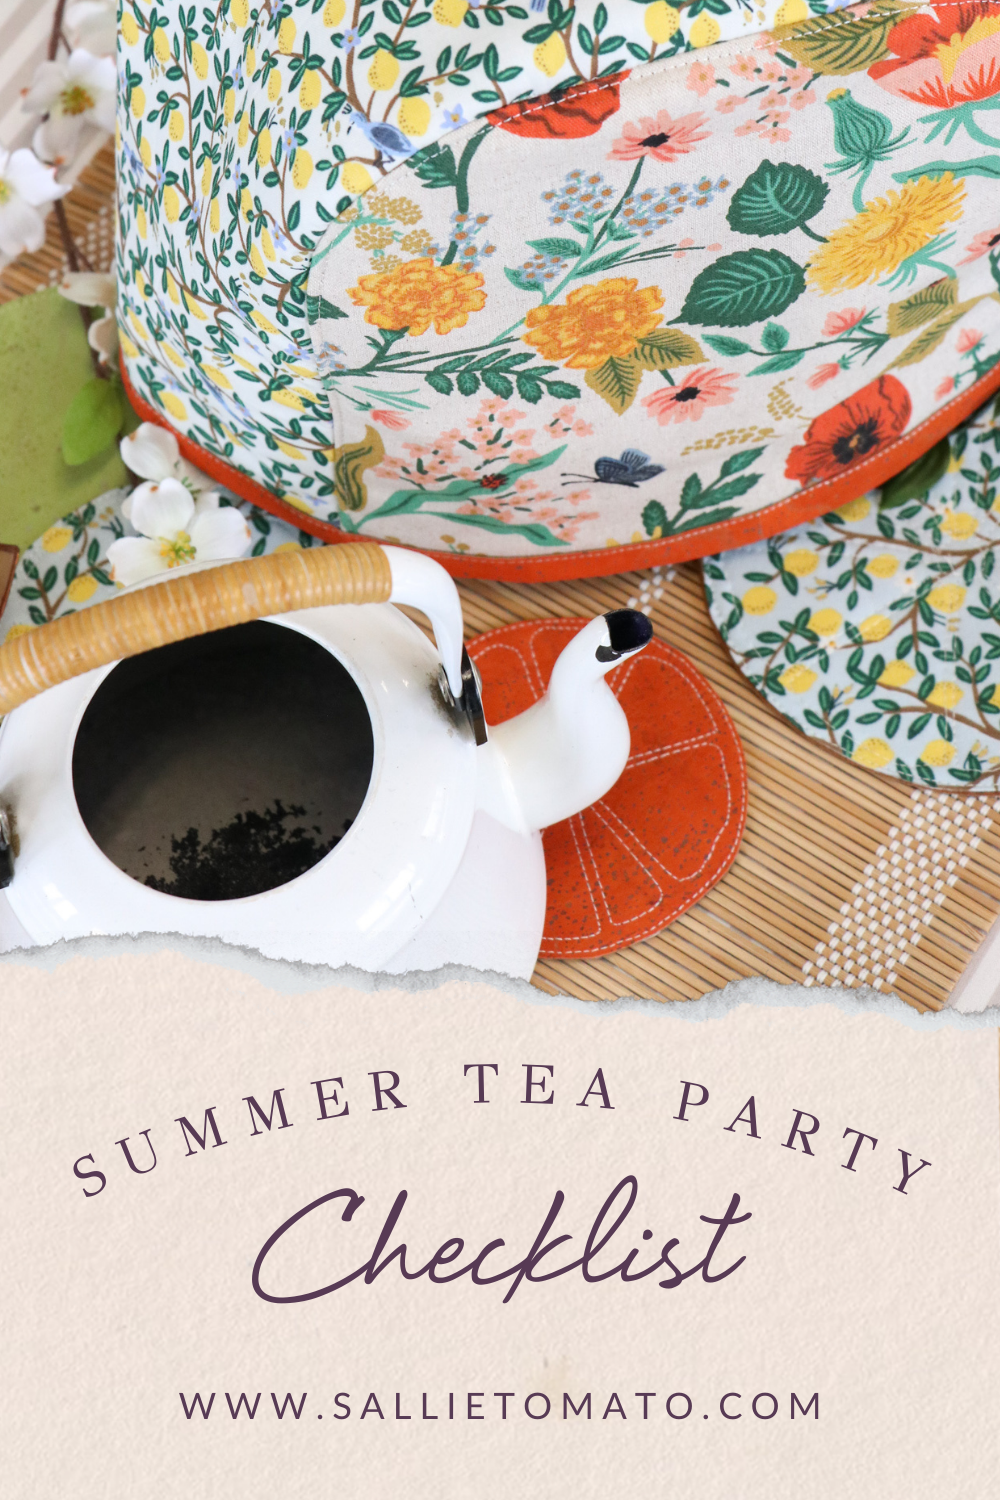 Summer Tea Party Checklist!